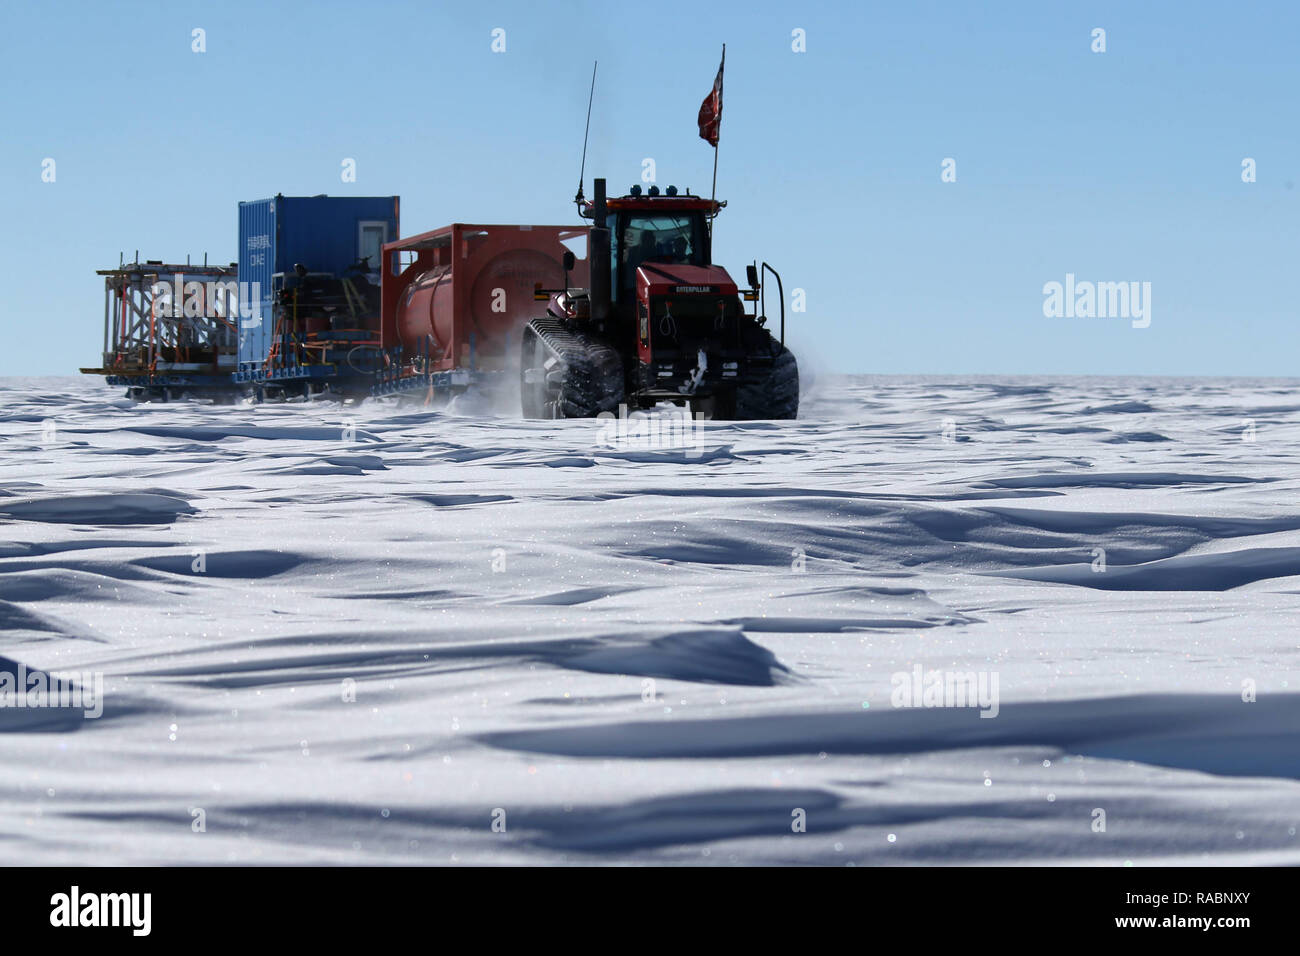 (190103) - Antarktis, Januar 3, 2019 (Xinhua) - ein Fahrzeug von Chinas 35. Antarktisexpedition Team läuft auf der Antarktis inland Eiskappe, Jan. 2, 2019. Die expeditionsteilnehmer Mittwoch in das Gebiet der Dome Argus (Dome A), die Spitze der Antarktischen Eiskappe im Binnenland. (Xinhua / Liu Shiping) Stockfoto